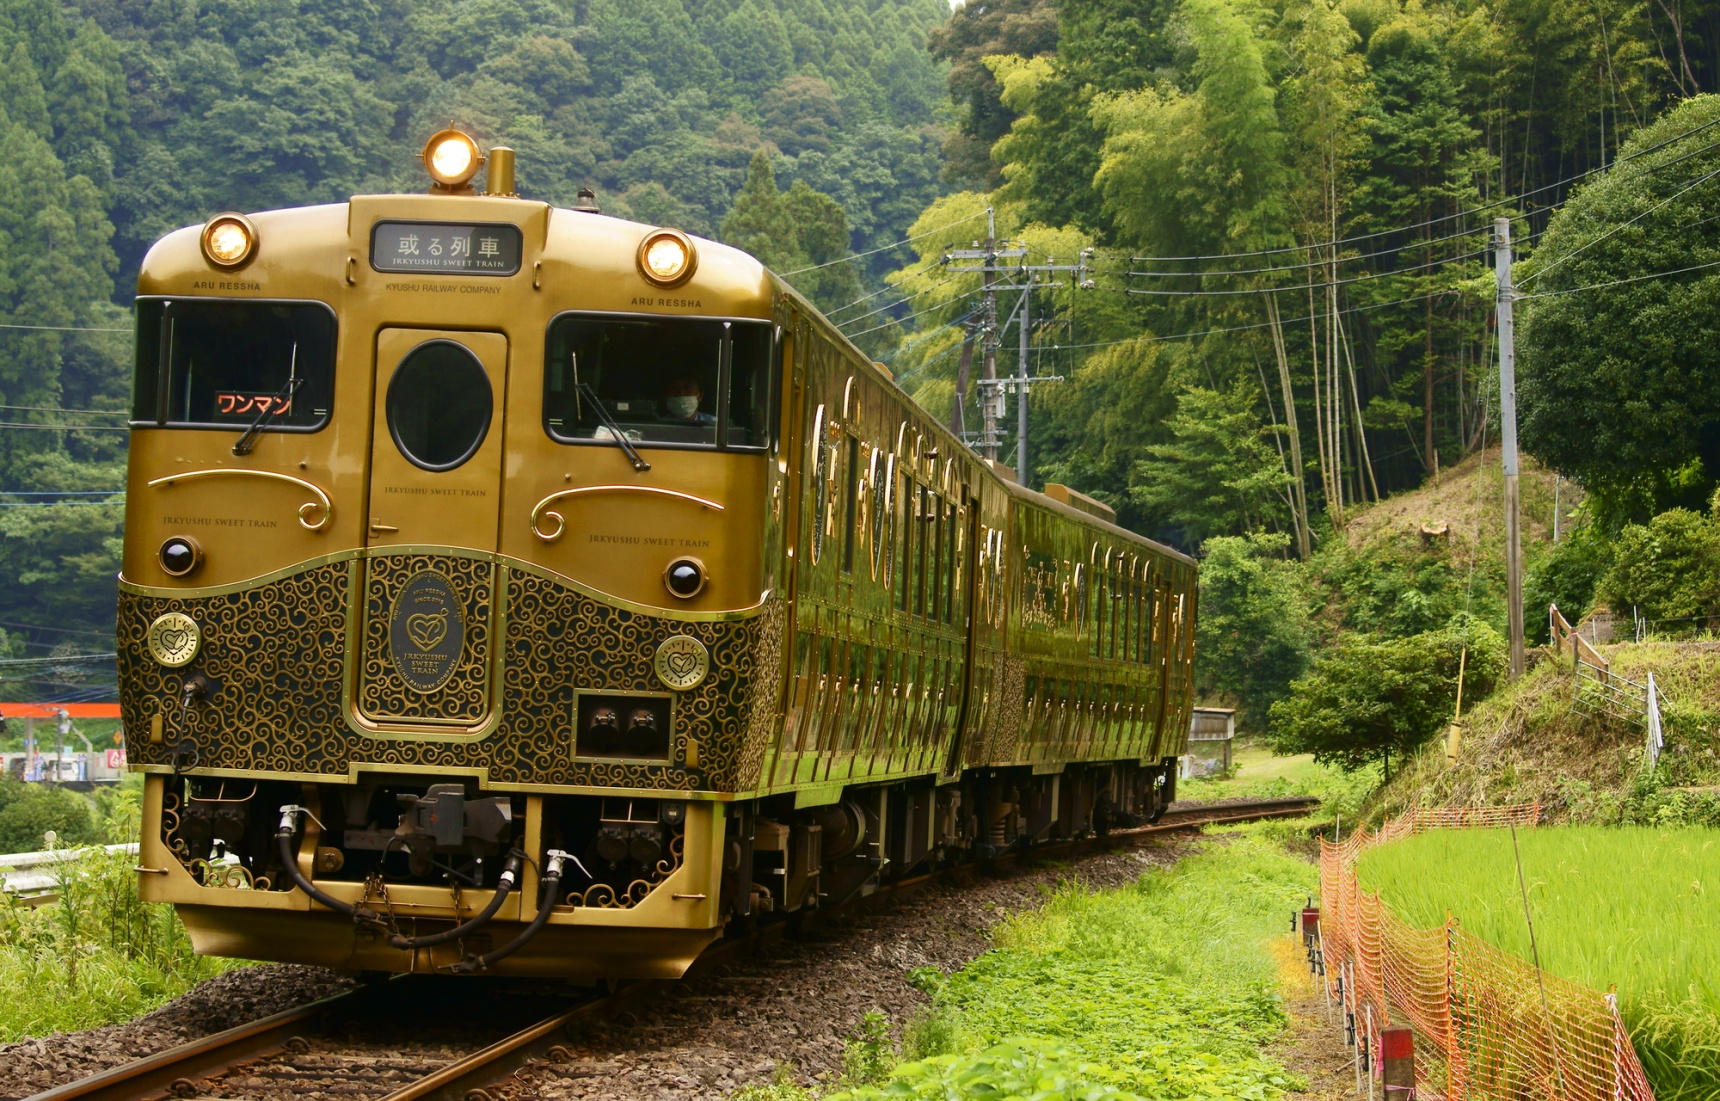 【日本觀光列車特輯・九州篇】移動城堡般的「ARU列車」與極致甜點的幸福感動